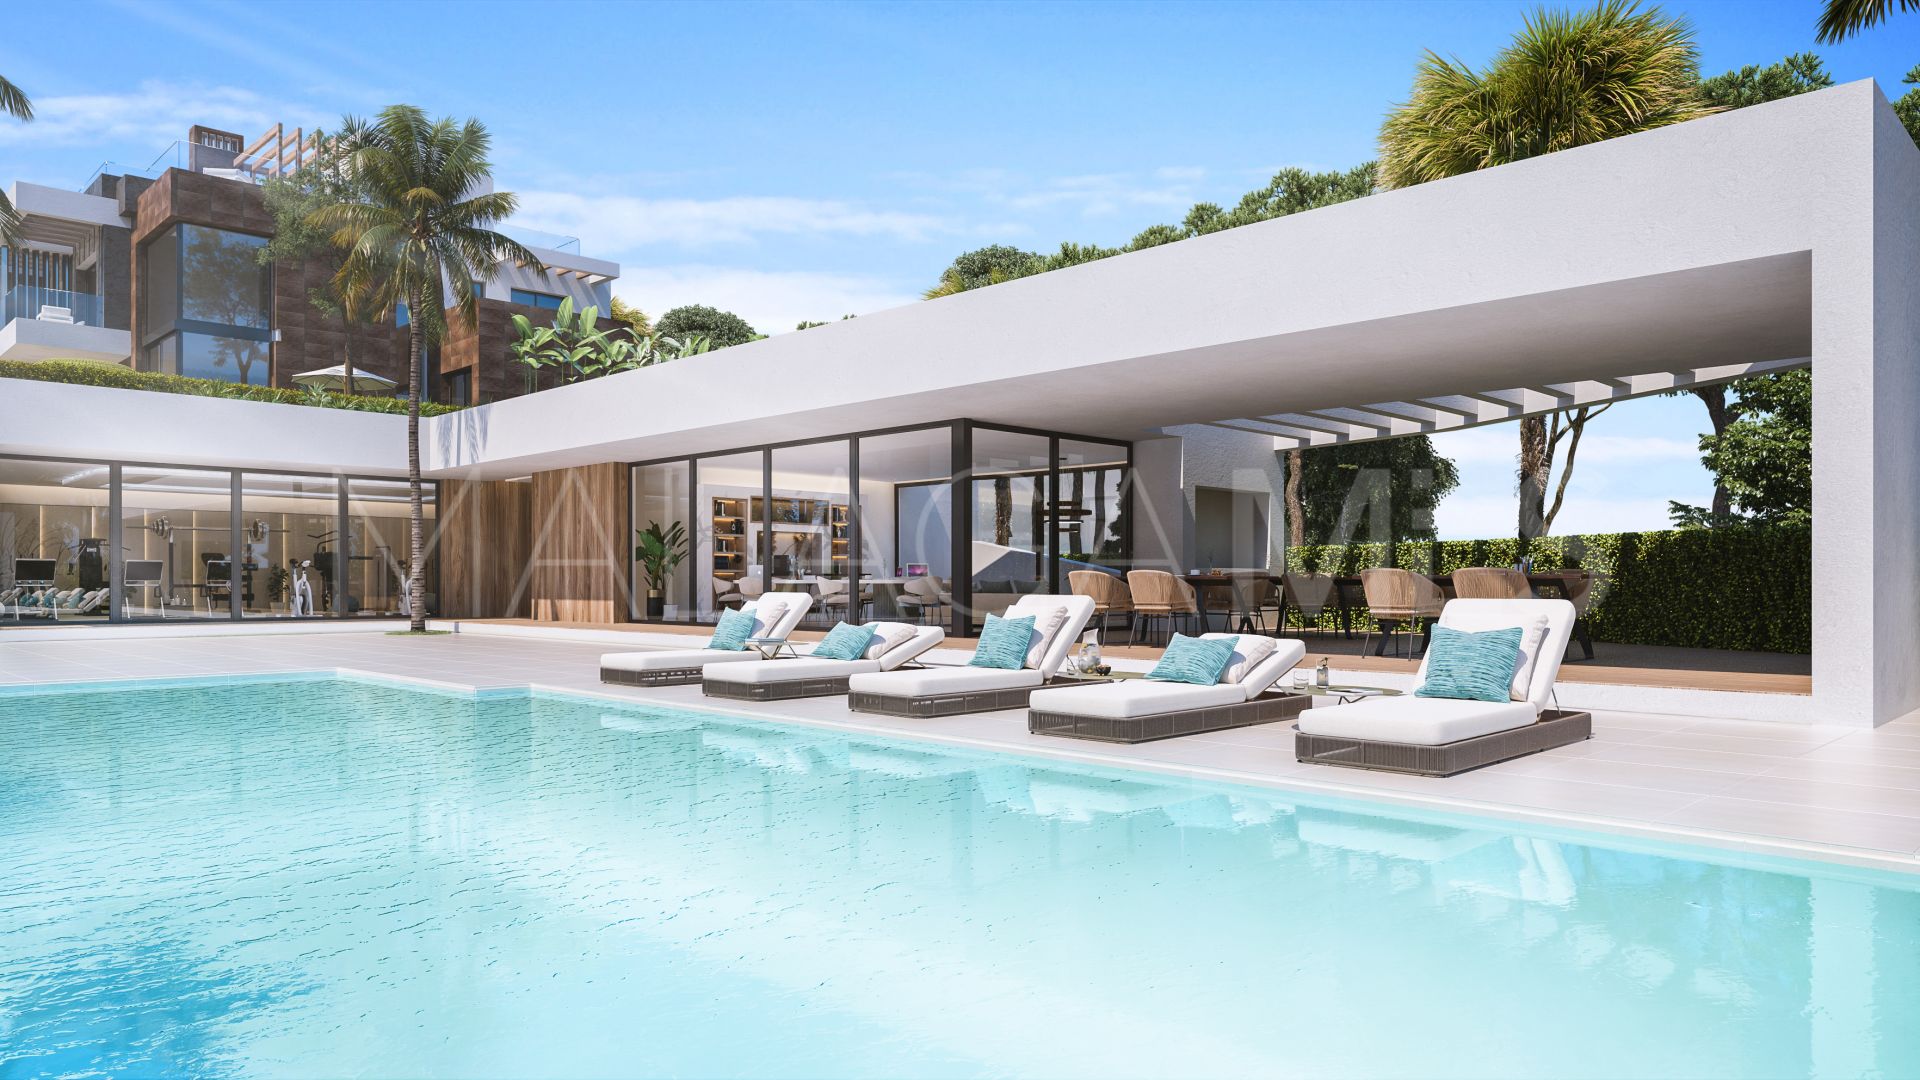 Rio Real, villa pareada with 4 bedrooms for sale